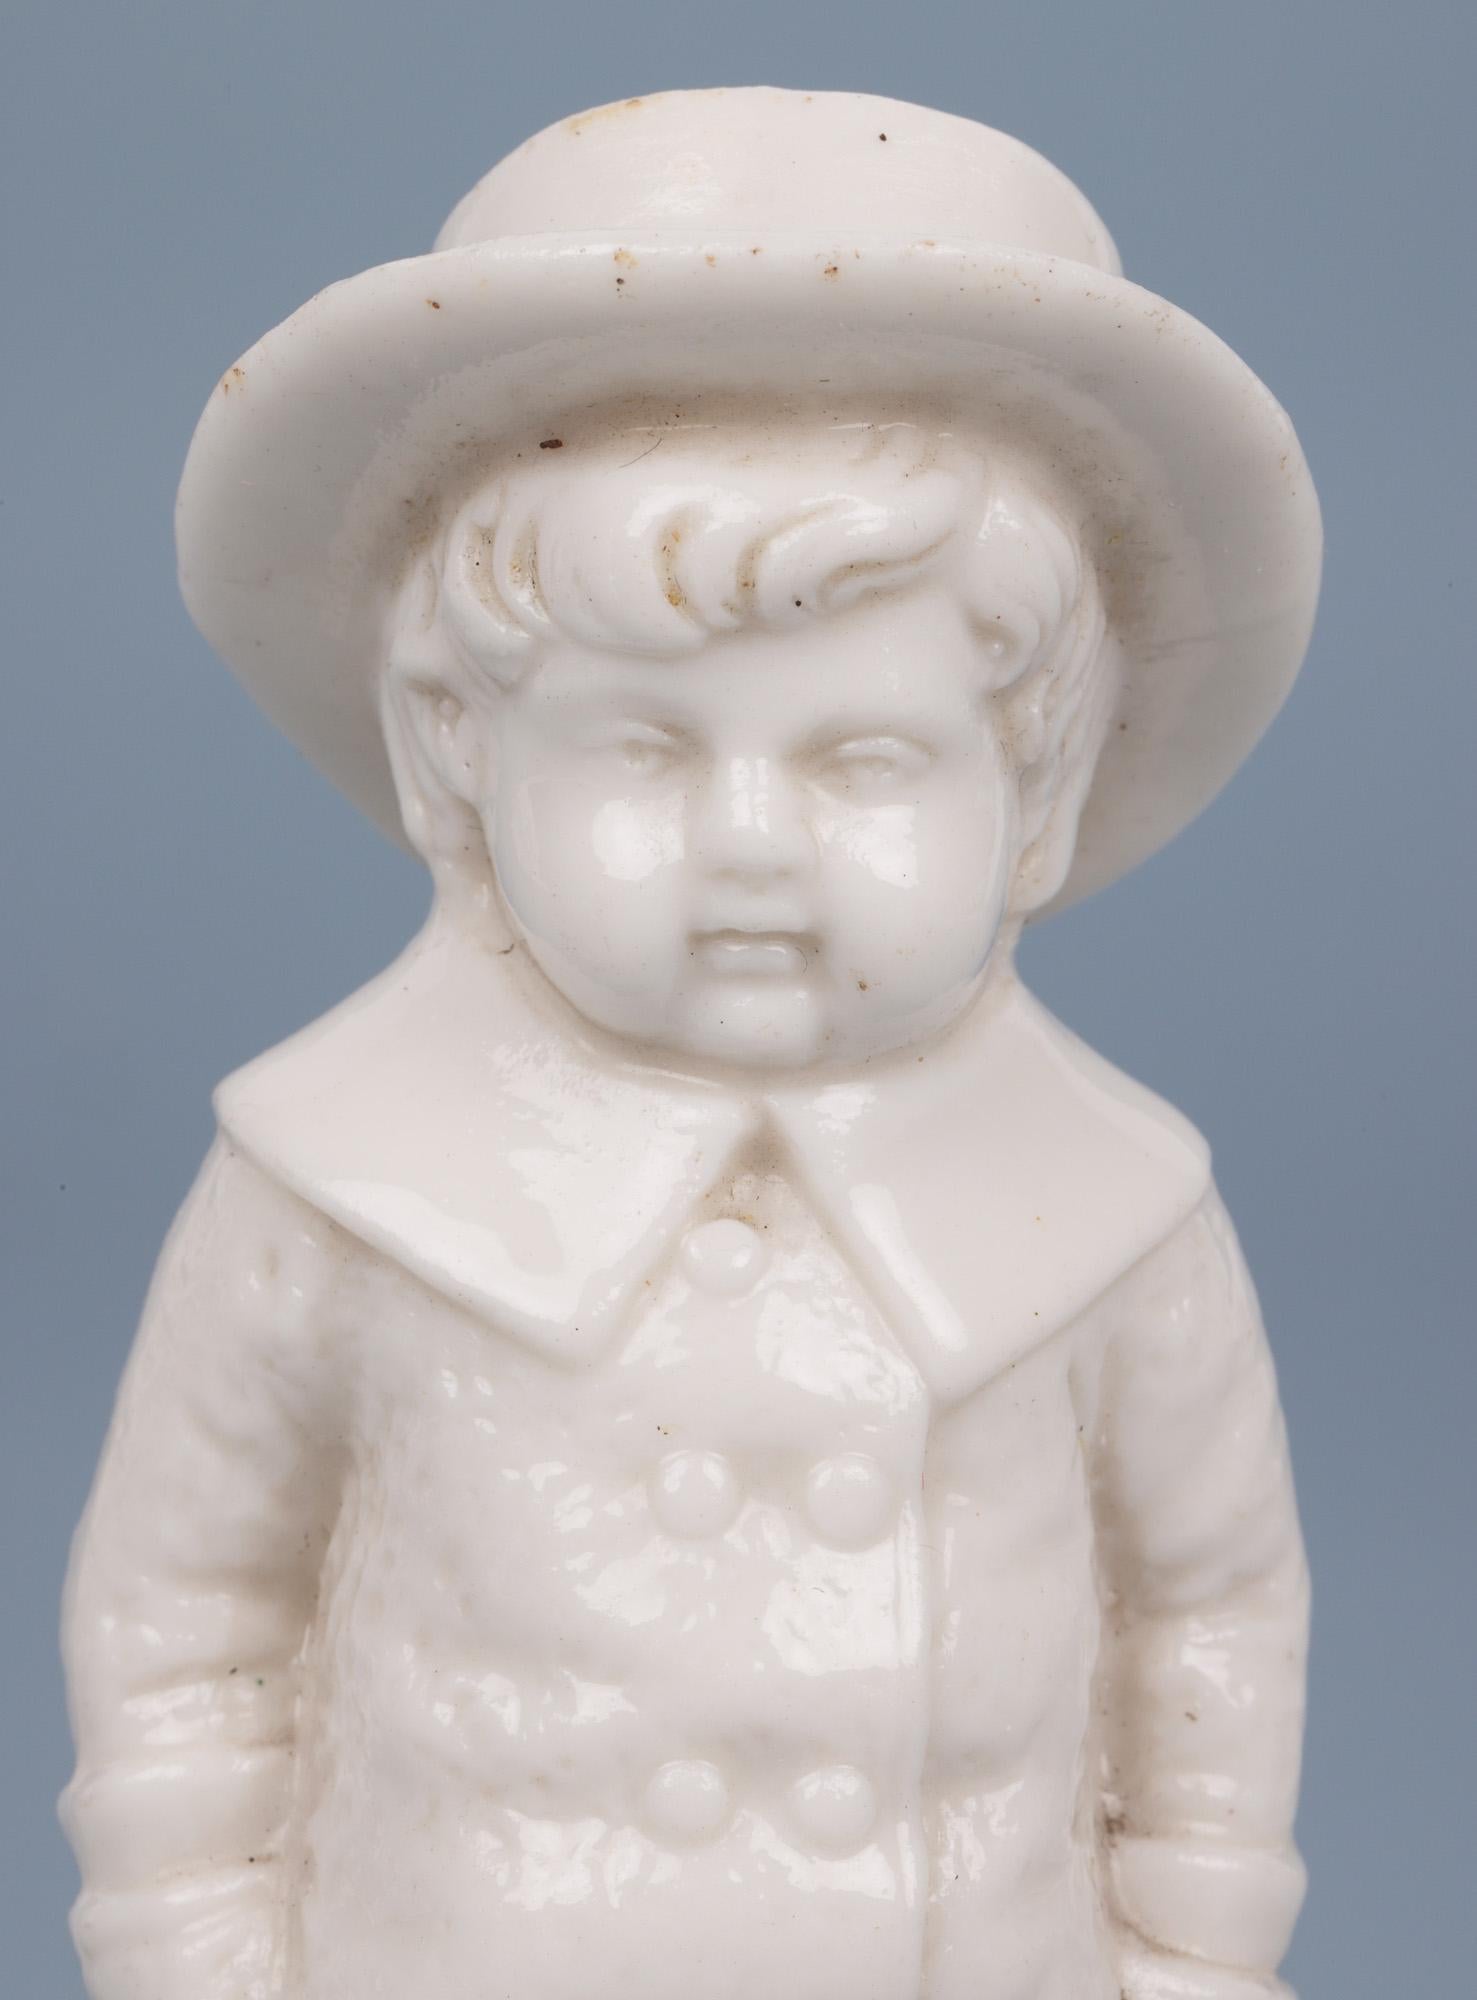 Ravissante poivrière en porcelaine anglaise ancienne représentant un jeune garçon vêtu d'un manteau et d'un chapeau, datant du XIXe siècle. Ce pot de qualité est très légèrement fabriqué rappelant la qualité de Royal Worcester ou similaire et est